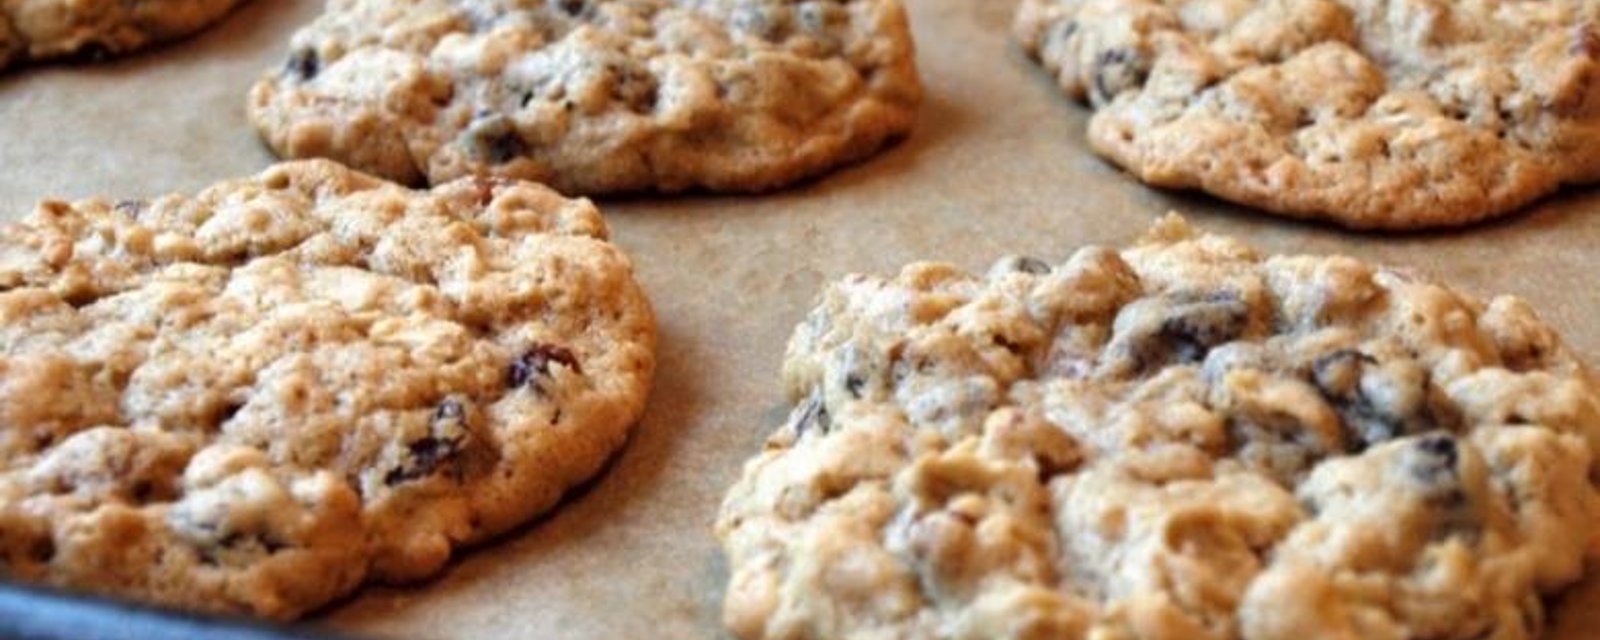 Un biscuit ultra simple à réaliser avec uniquement trois ingrédients.